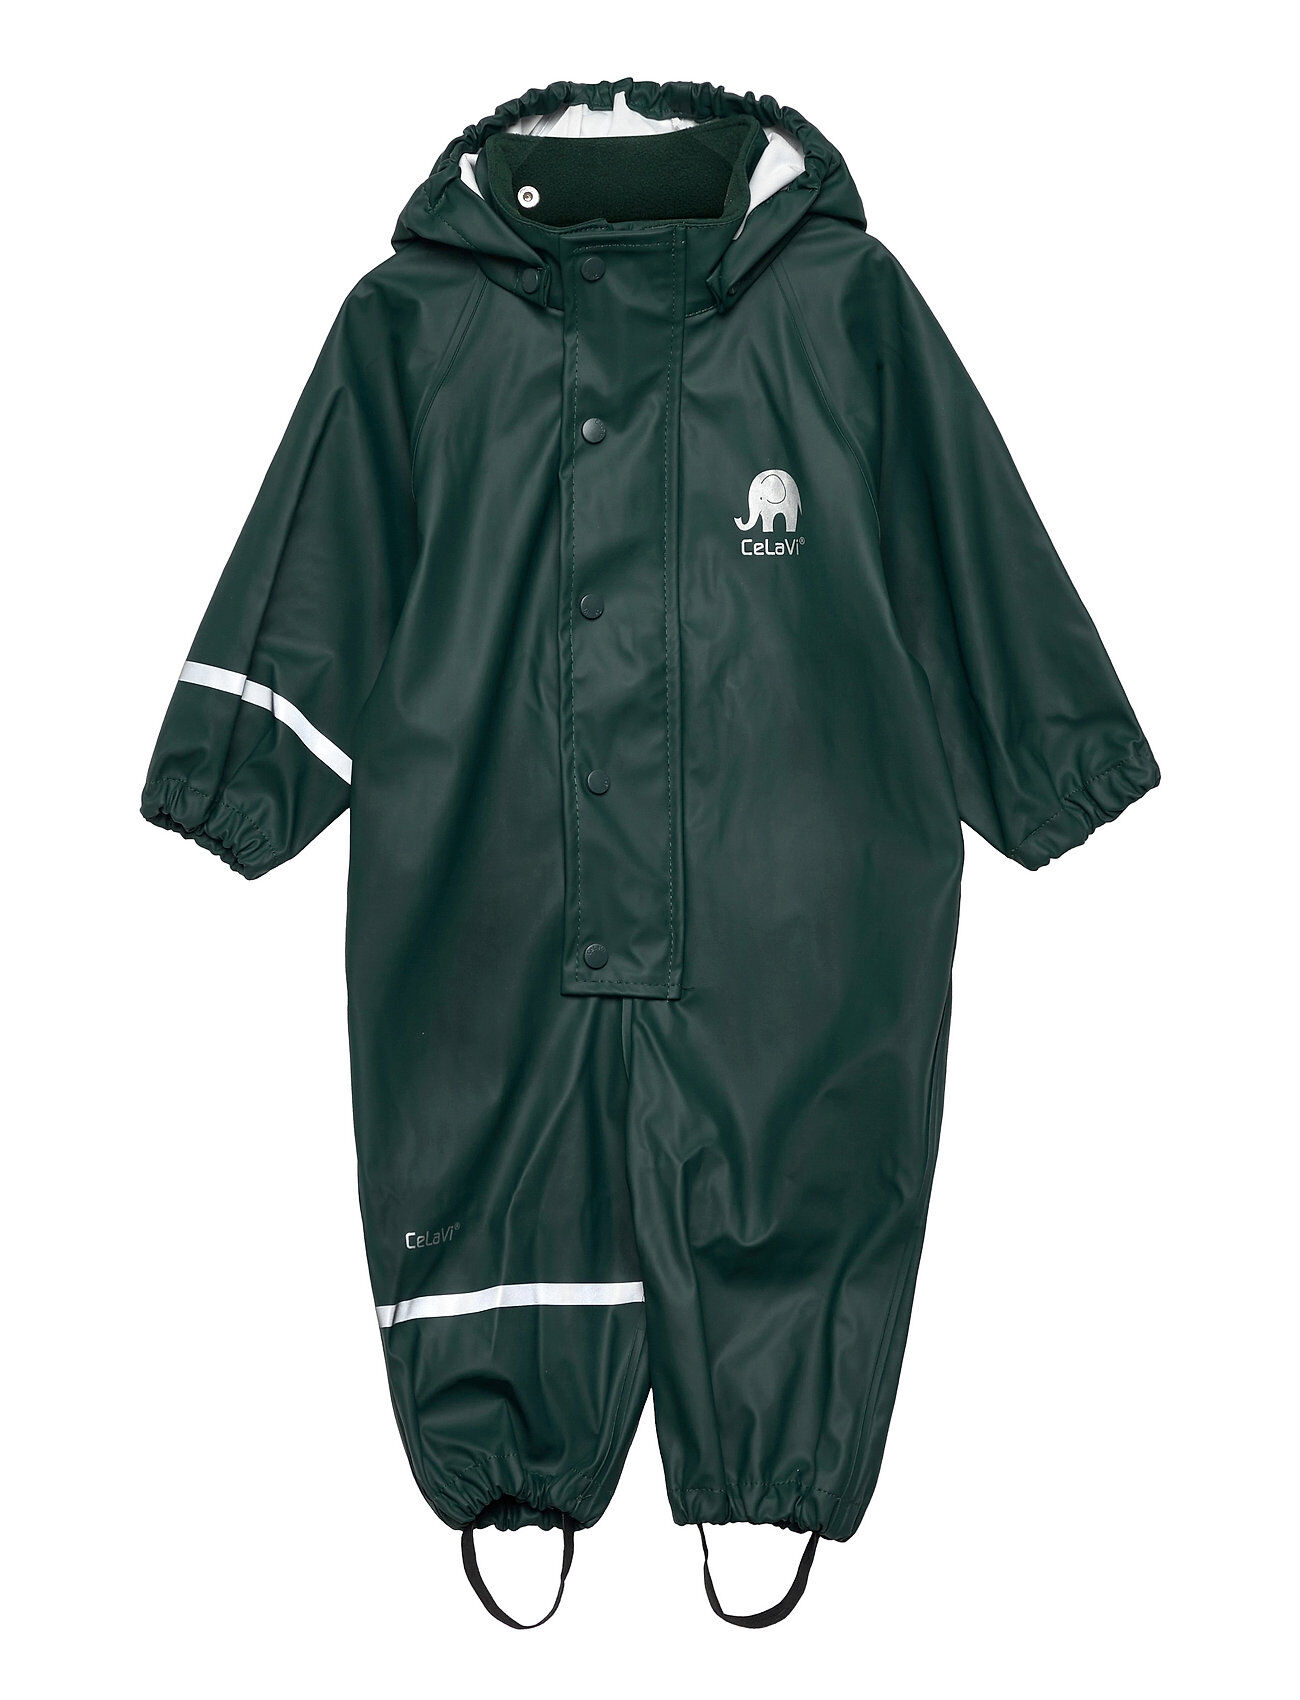 CeLaVi Rainwear Suit -Pu Outerwear Coveralls Rainwear Sets & Coveralls Grønn CeLaVi